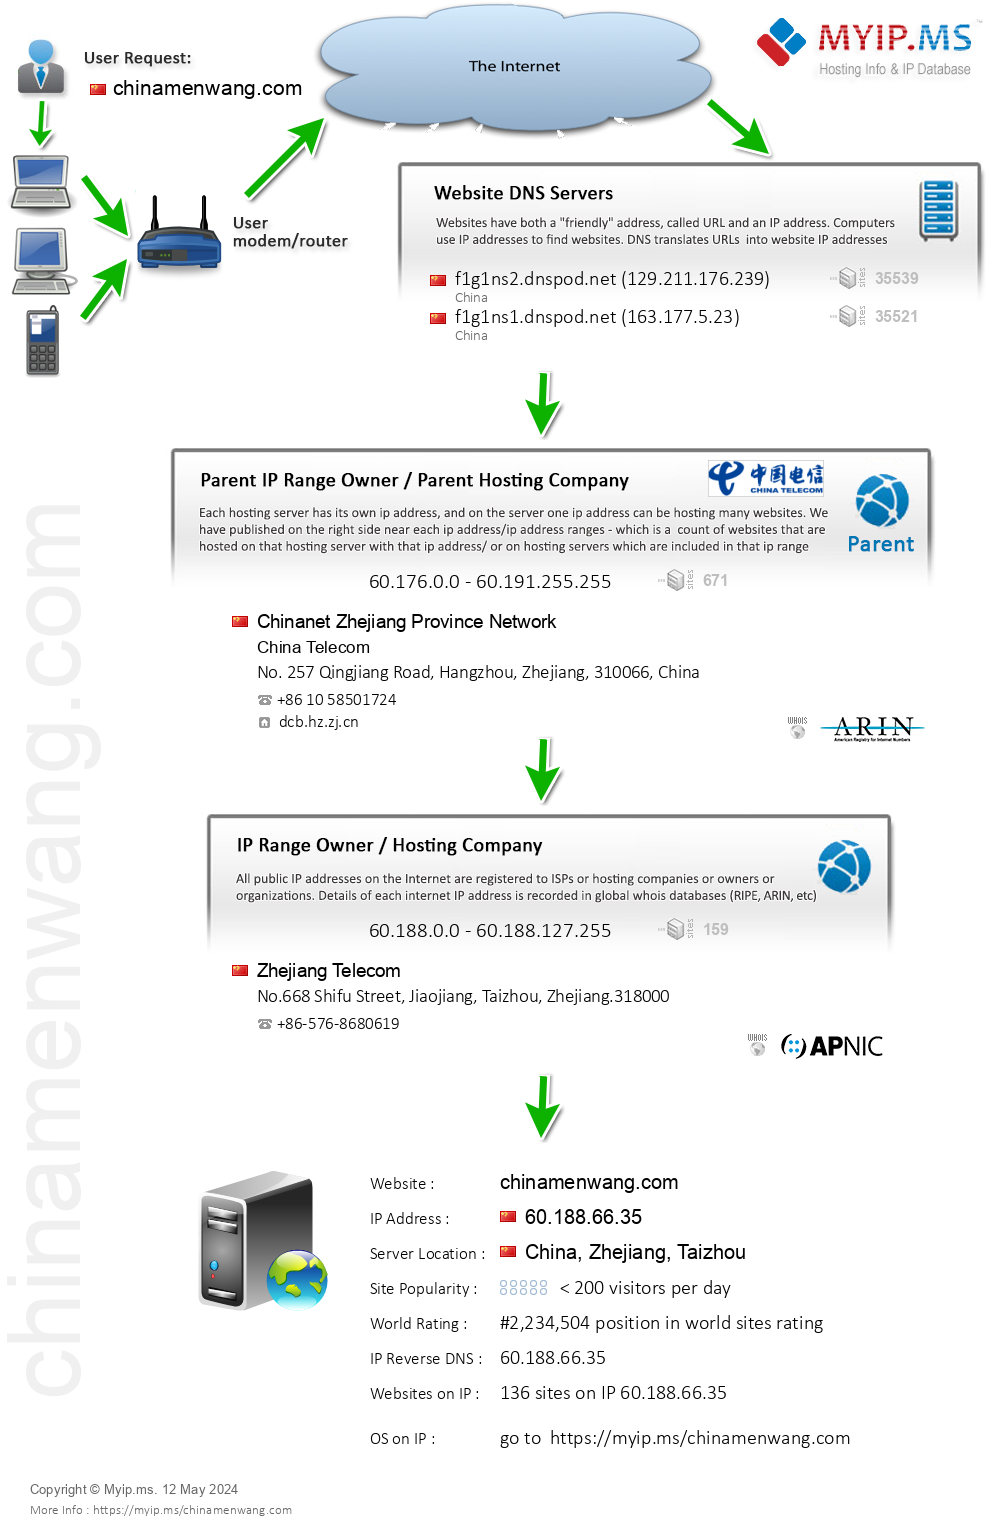 Chinamenwang.com - Website Hosting Visual IP Diagram